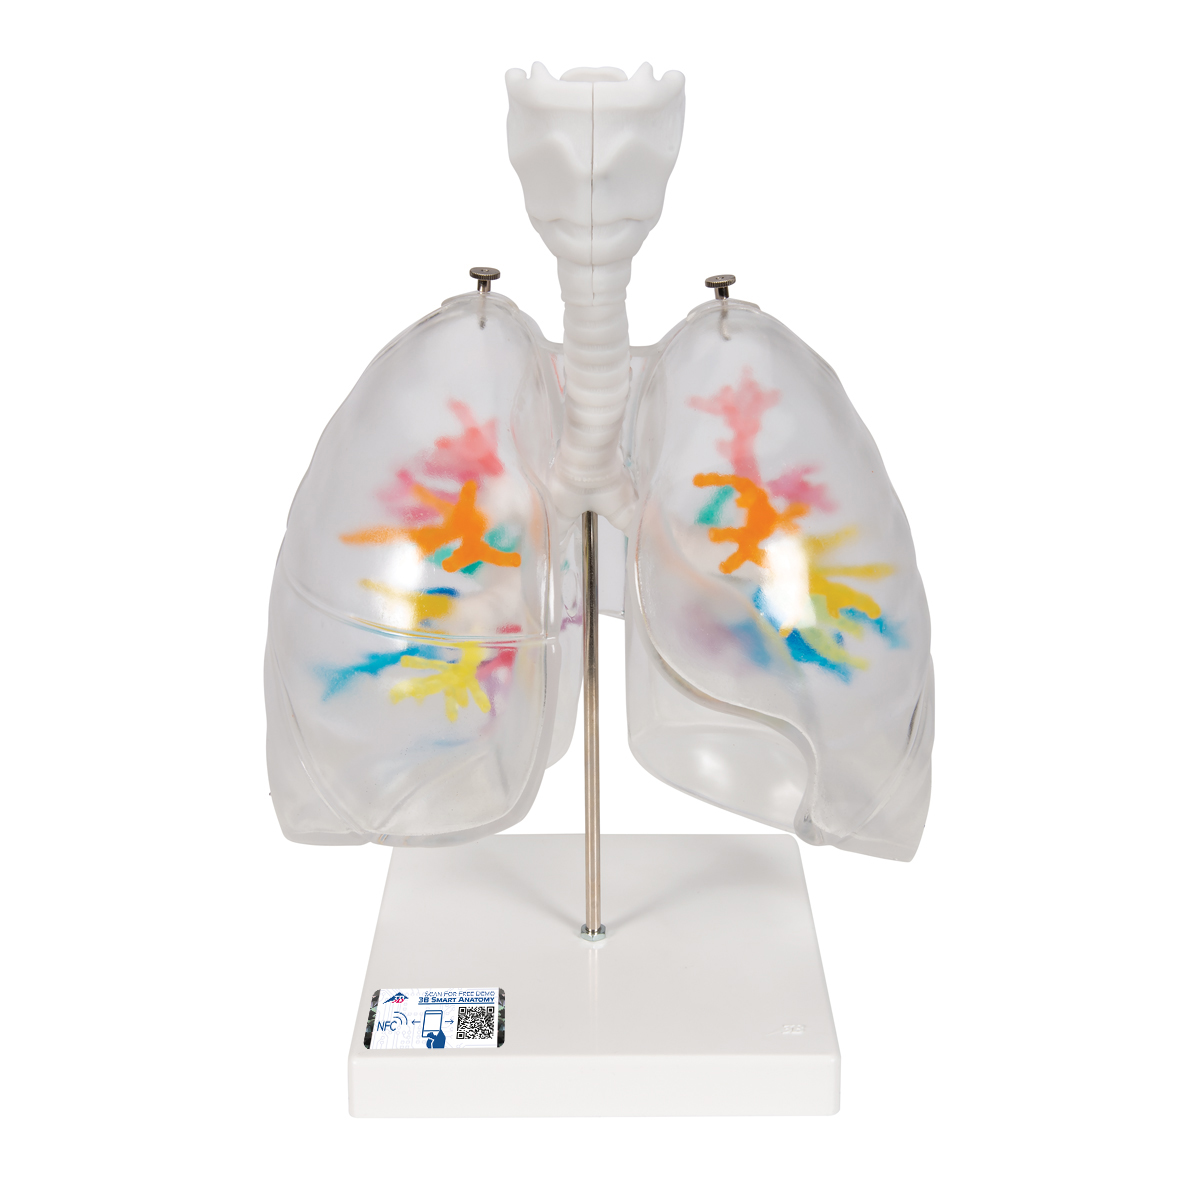 CT-Bronchialbaum Modell mit Kehlkopf und transparenten Lungenflügeln - 3B Smart Anatomy, Bestellnummer 1000275, G23/1, 3B Scientific